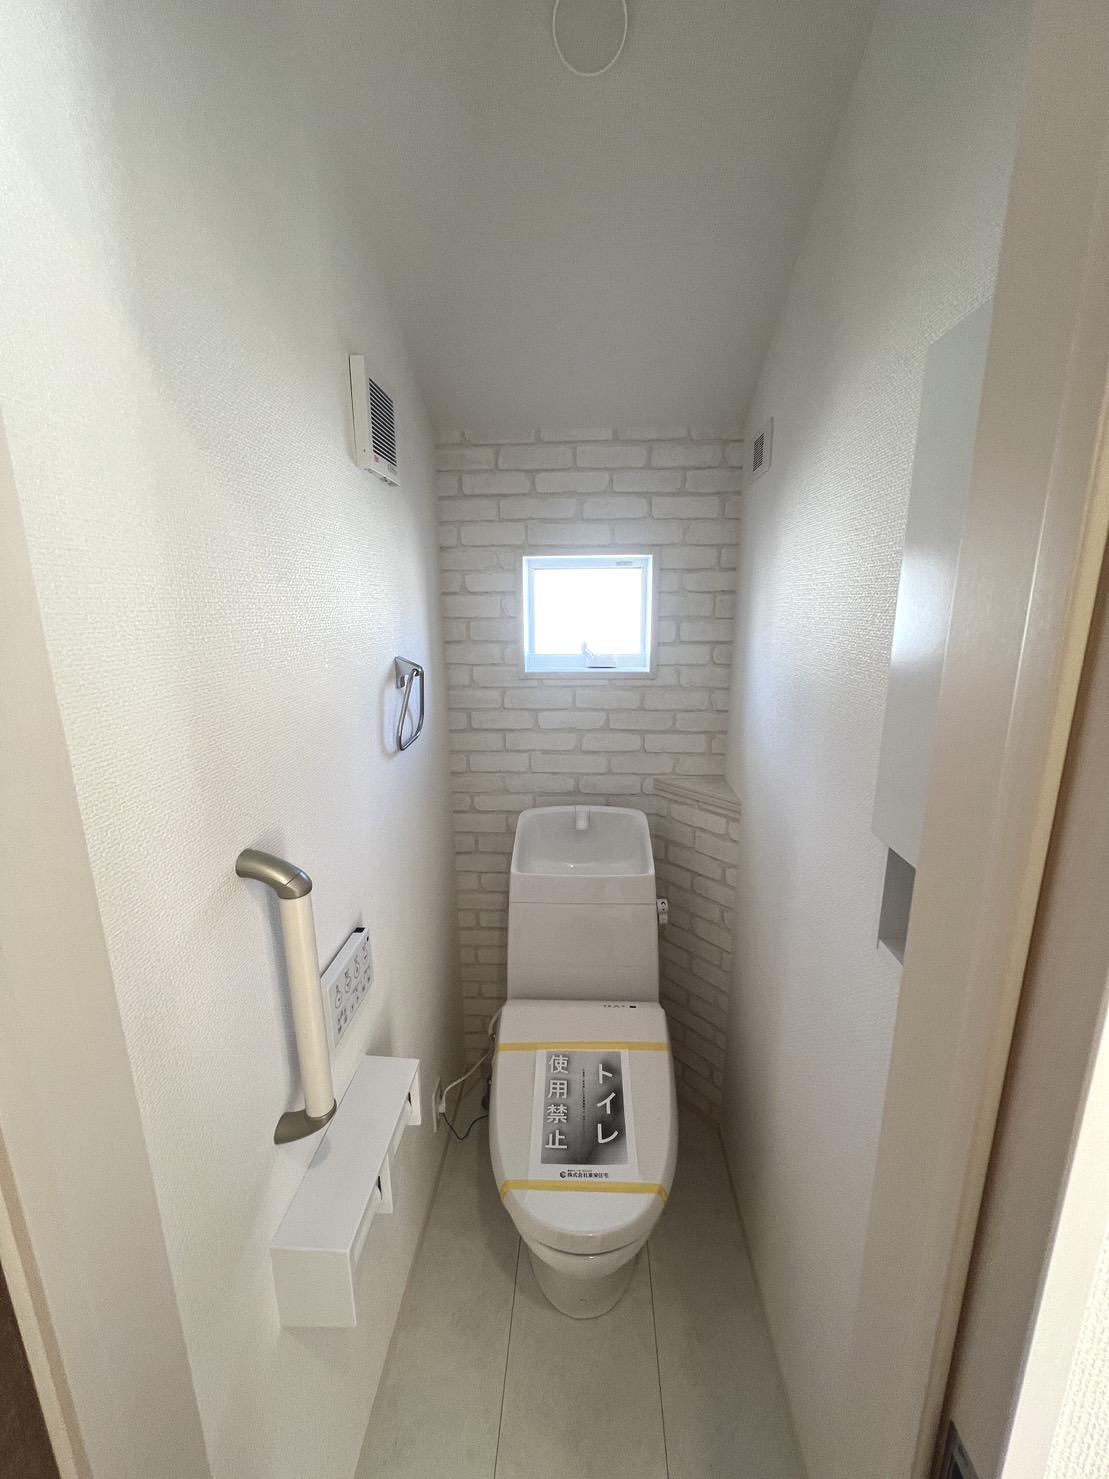 【2階トイレ】壁への水はねを防ぎ手洗いしやすい形状のトイレタンク。殺風景になりがちなトイレにも温かみのあるアクセントクロスを選択しています。